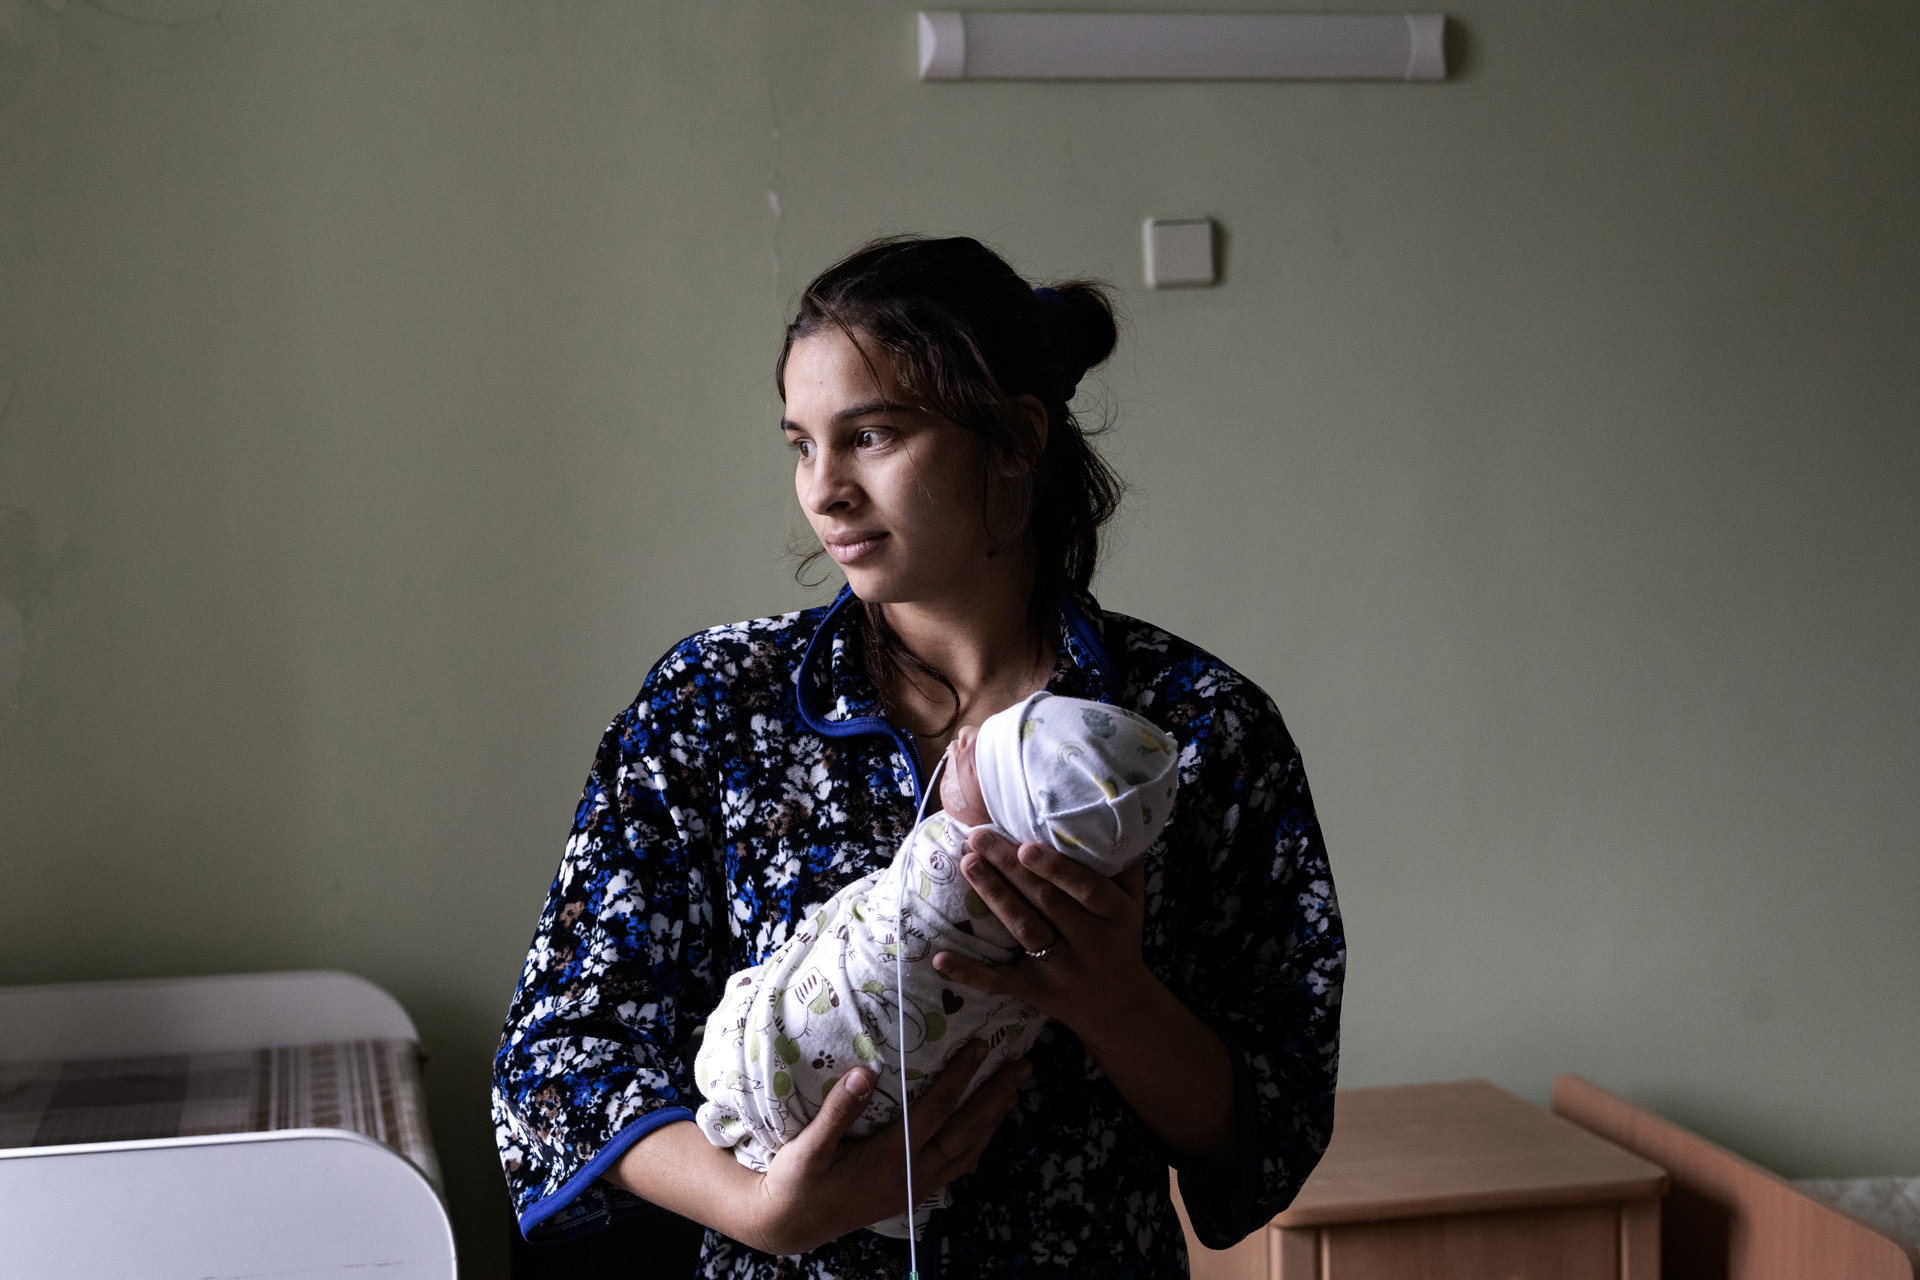 Rosa na dziecko zdecydowała się, kiedy wojna już trwała.  Stres jaki towarzyszy kobietom utrudnia donoszenie ciąży. Córkę urodziła w 34 tygodniu ciąży. Mimo wszystko był to dla niej czas radości, jest przekonana, że nawet w najgorszych dla Ukrainy czasach życie toczy się dalej. 

